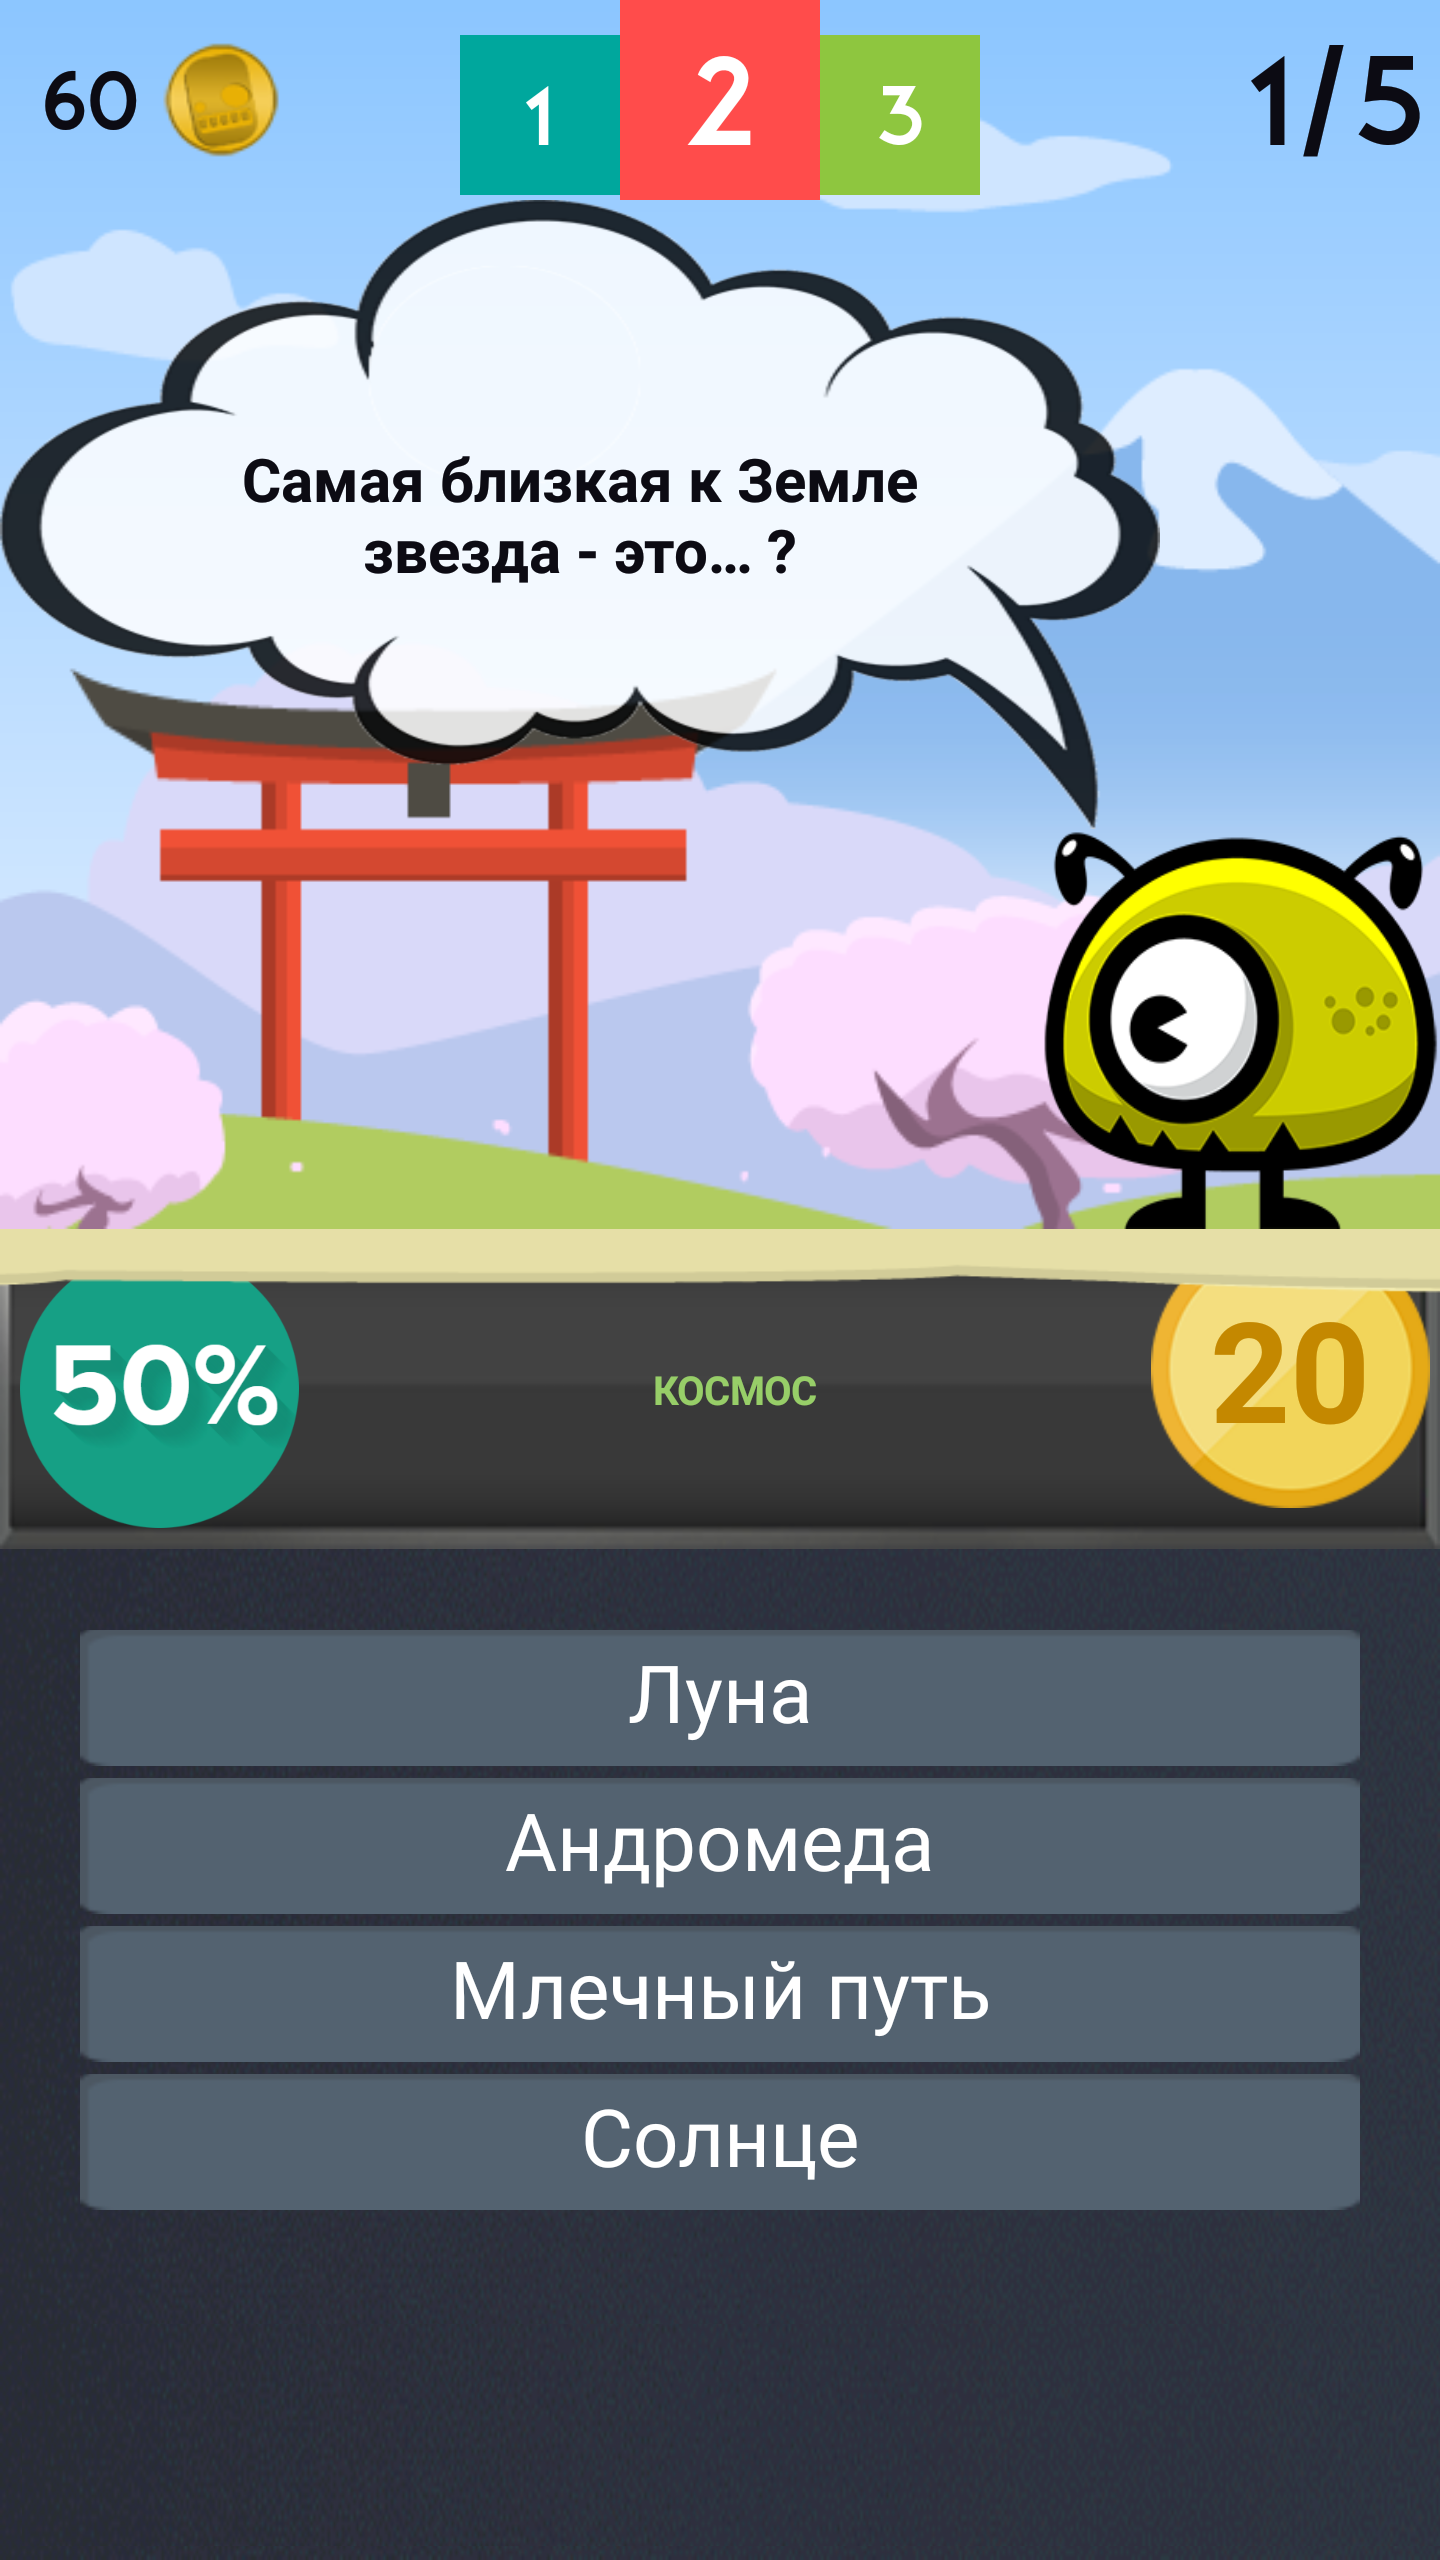 Android application Trivia Quiz screenshort